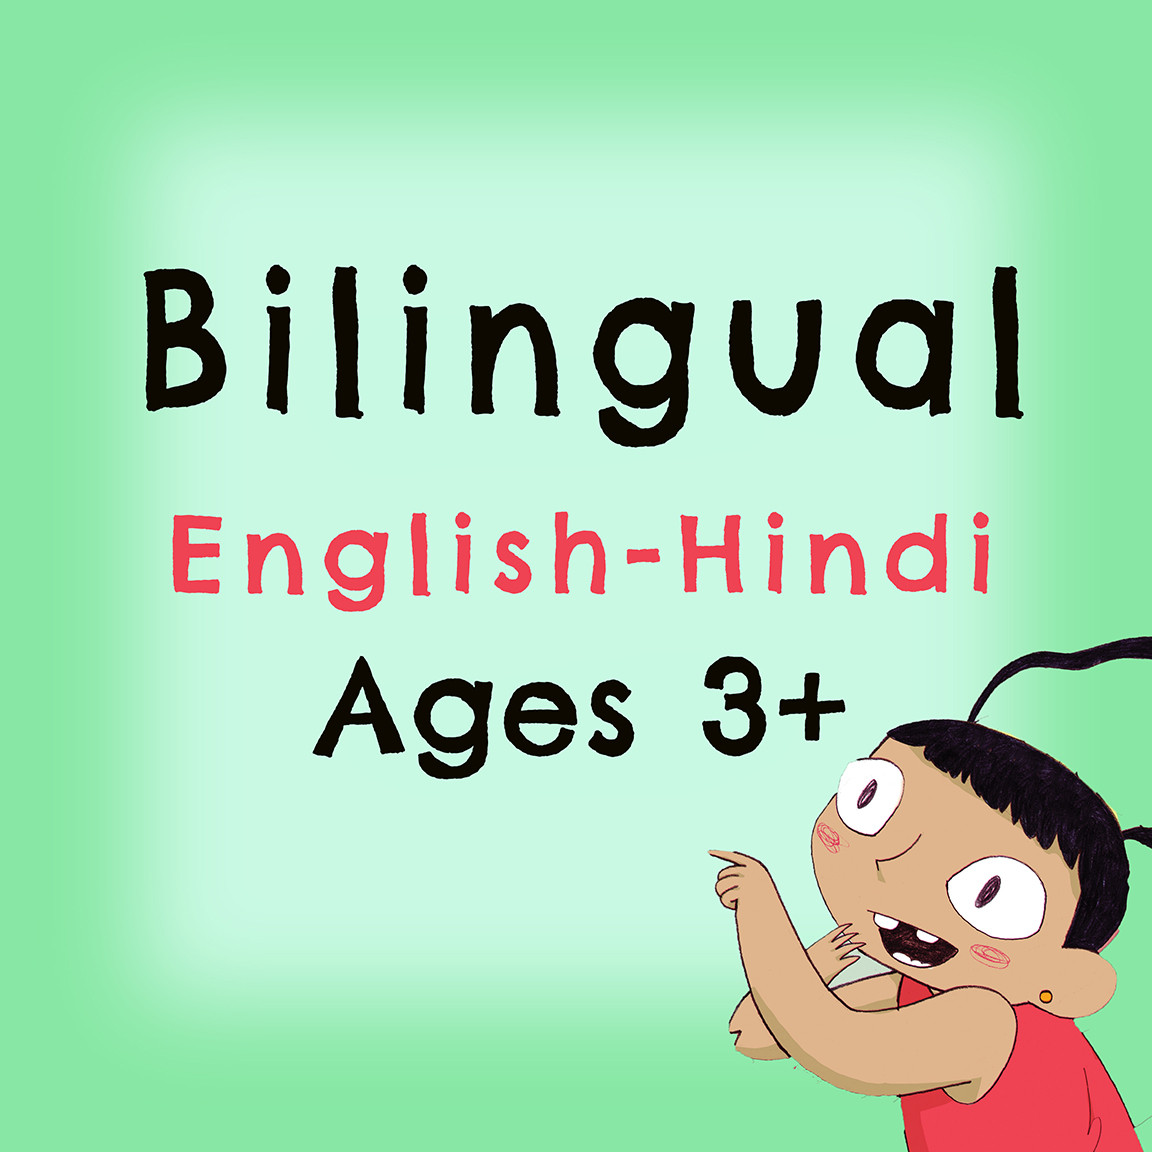 Bilingual: English-Hindi Pack 4